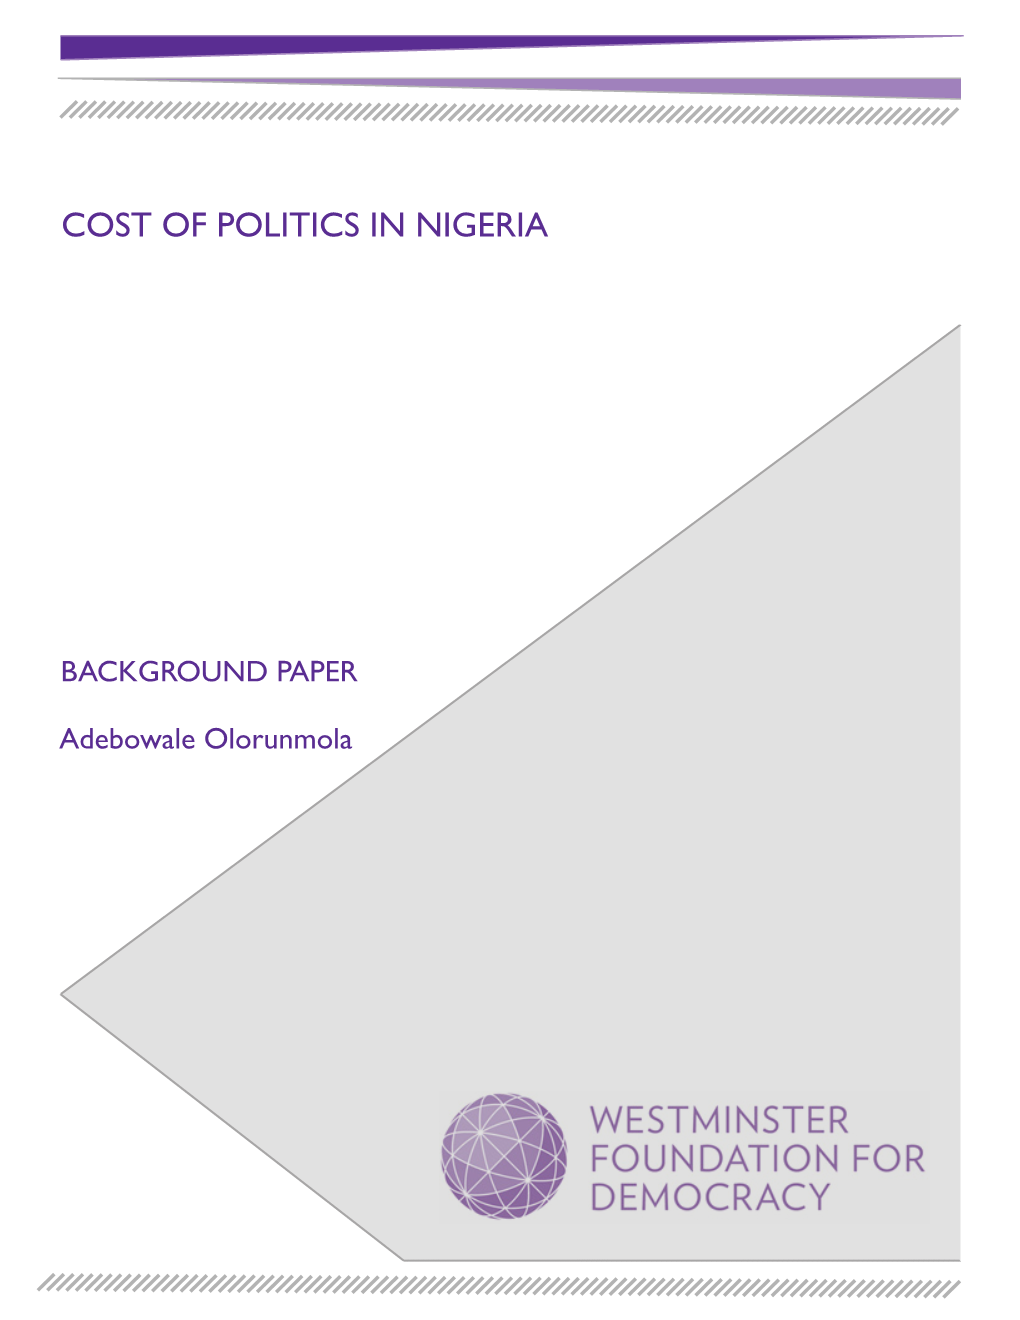 Cost of Politics in Nigeria